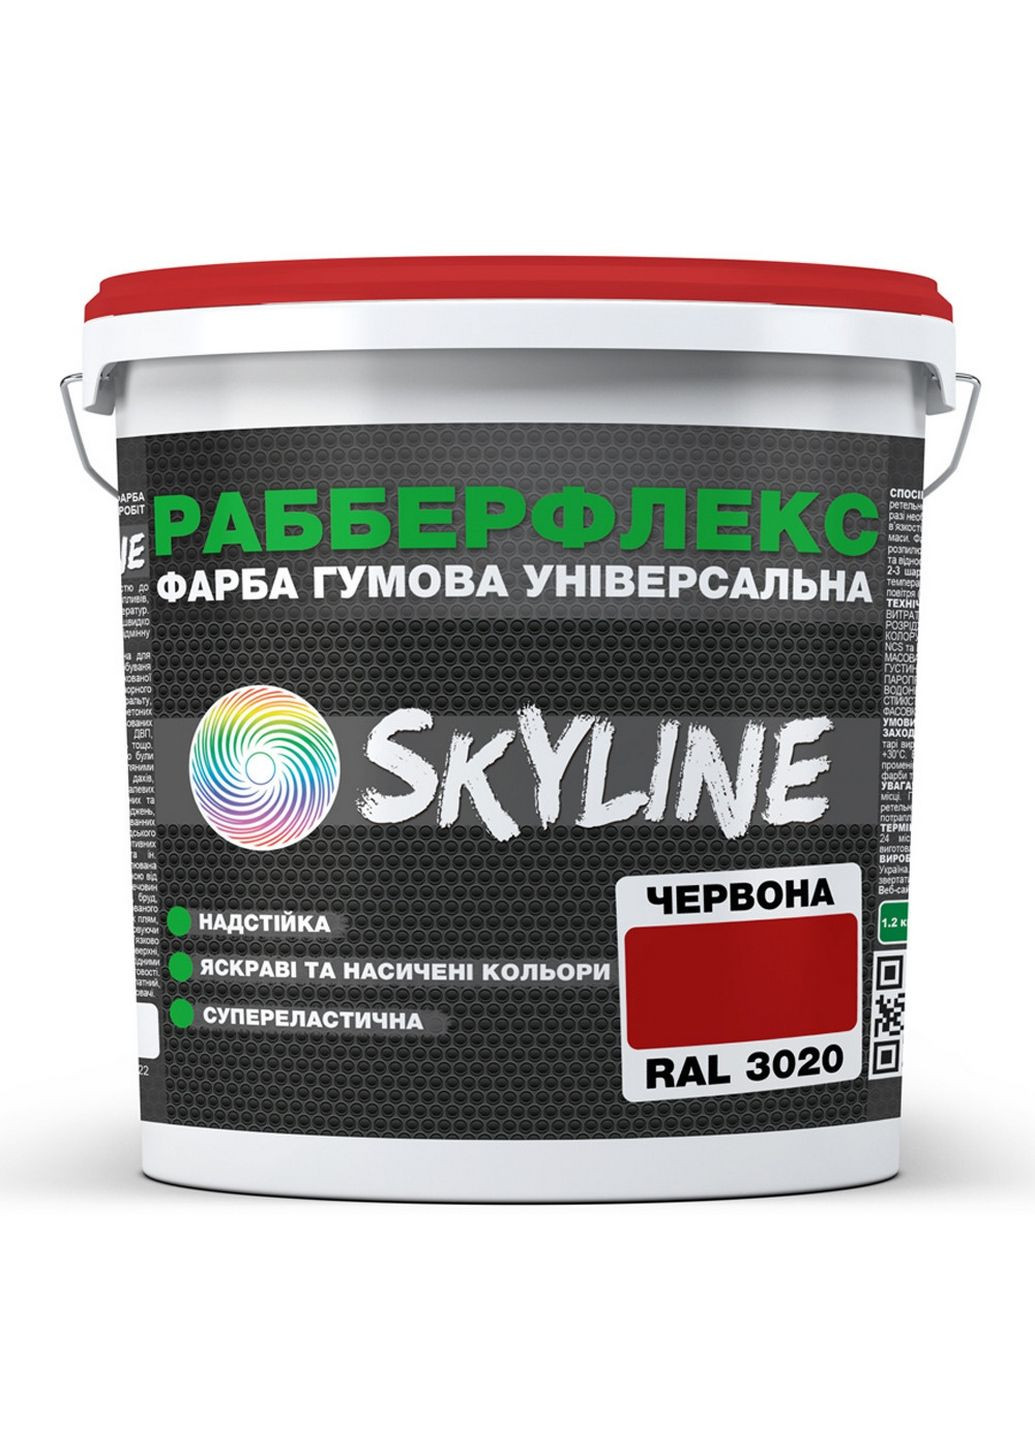 Сверхстойкая краска резиновая суперэластичная «РабберФлекс» 3,6 кг SkyLine (283326419)